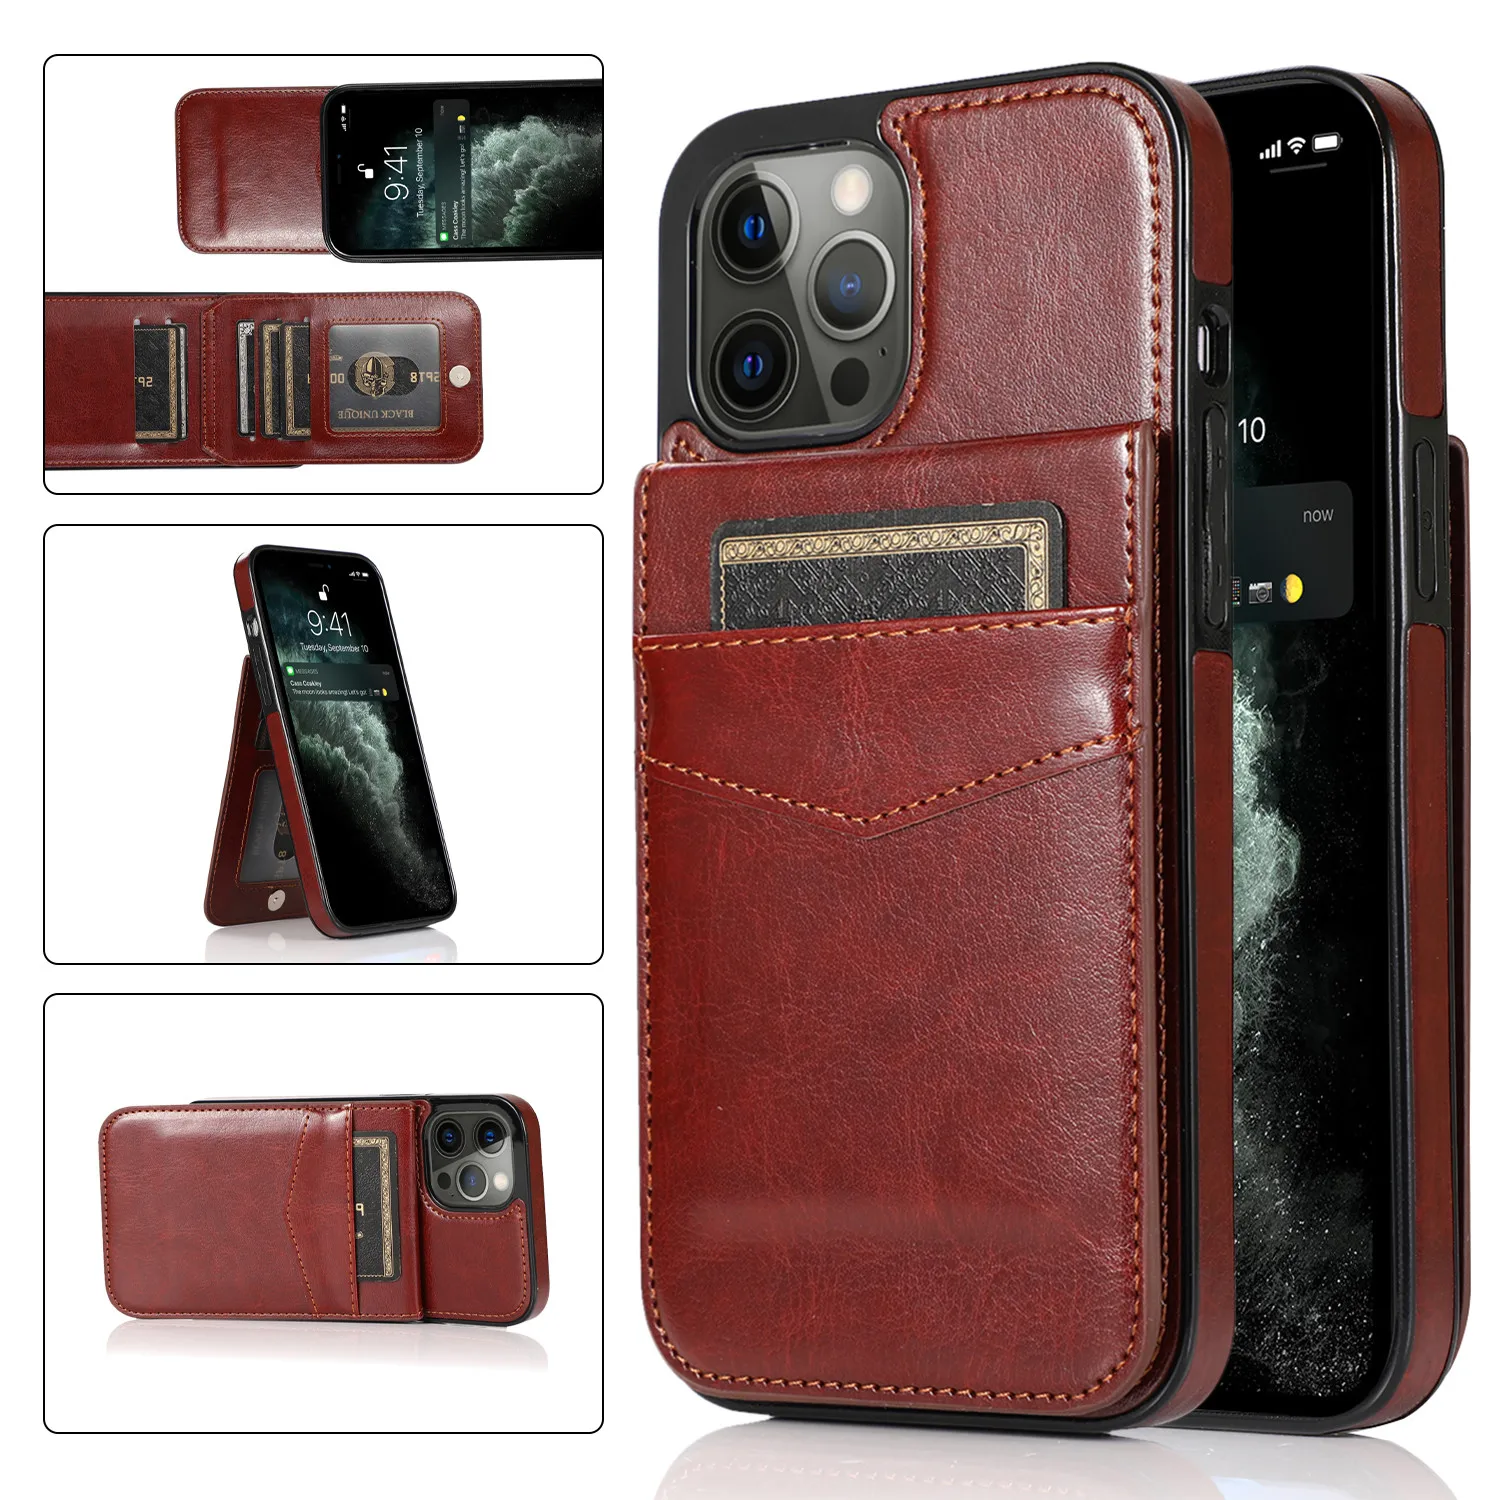 

Кожаный чехол-бумажник с откидной крышкой для IPhone 13 12 Mini 11 X XR XS Pro Max 7 8 Plus с держателем для кредитных карт и подставкой